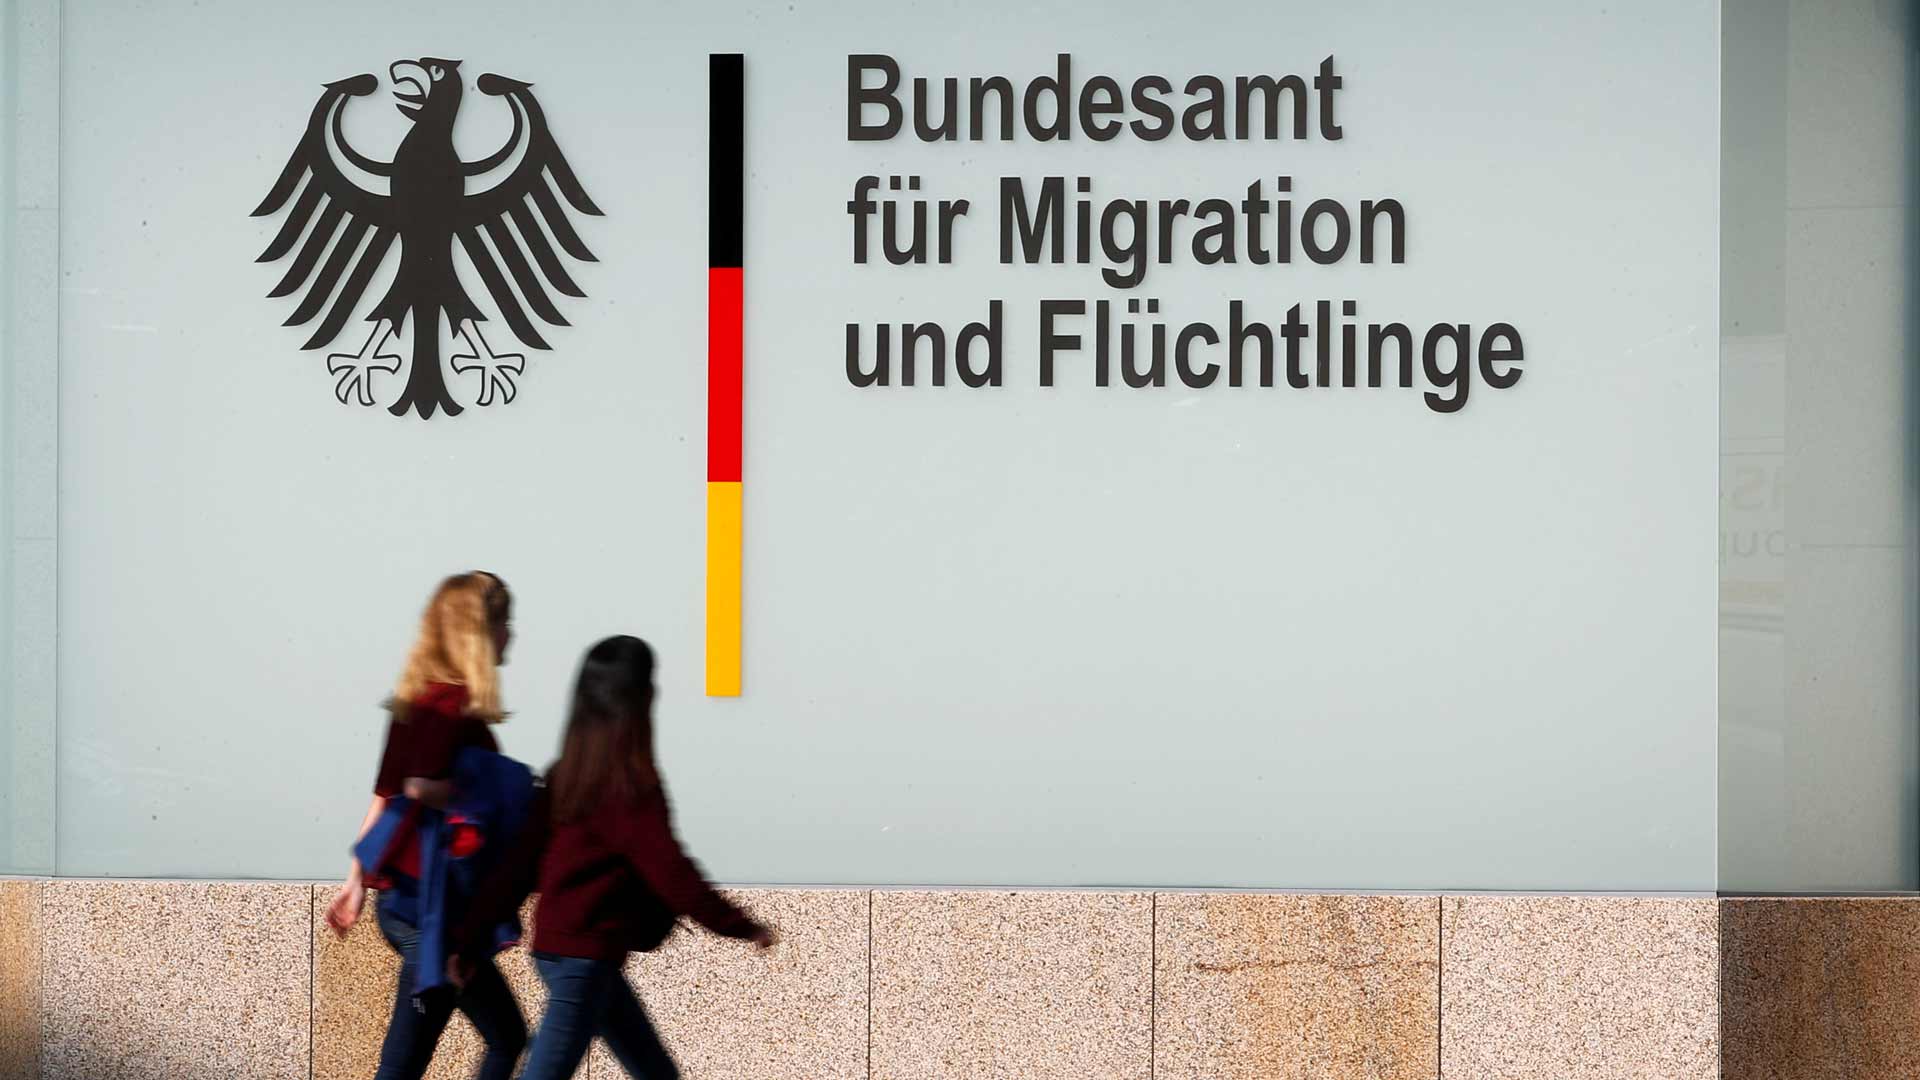 Alemania registra 1,6 millones de peticiones de asilo en 2016